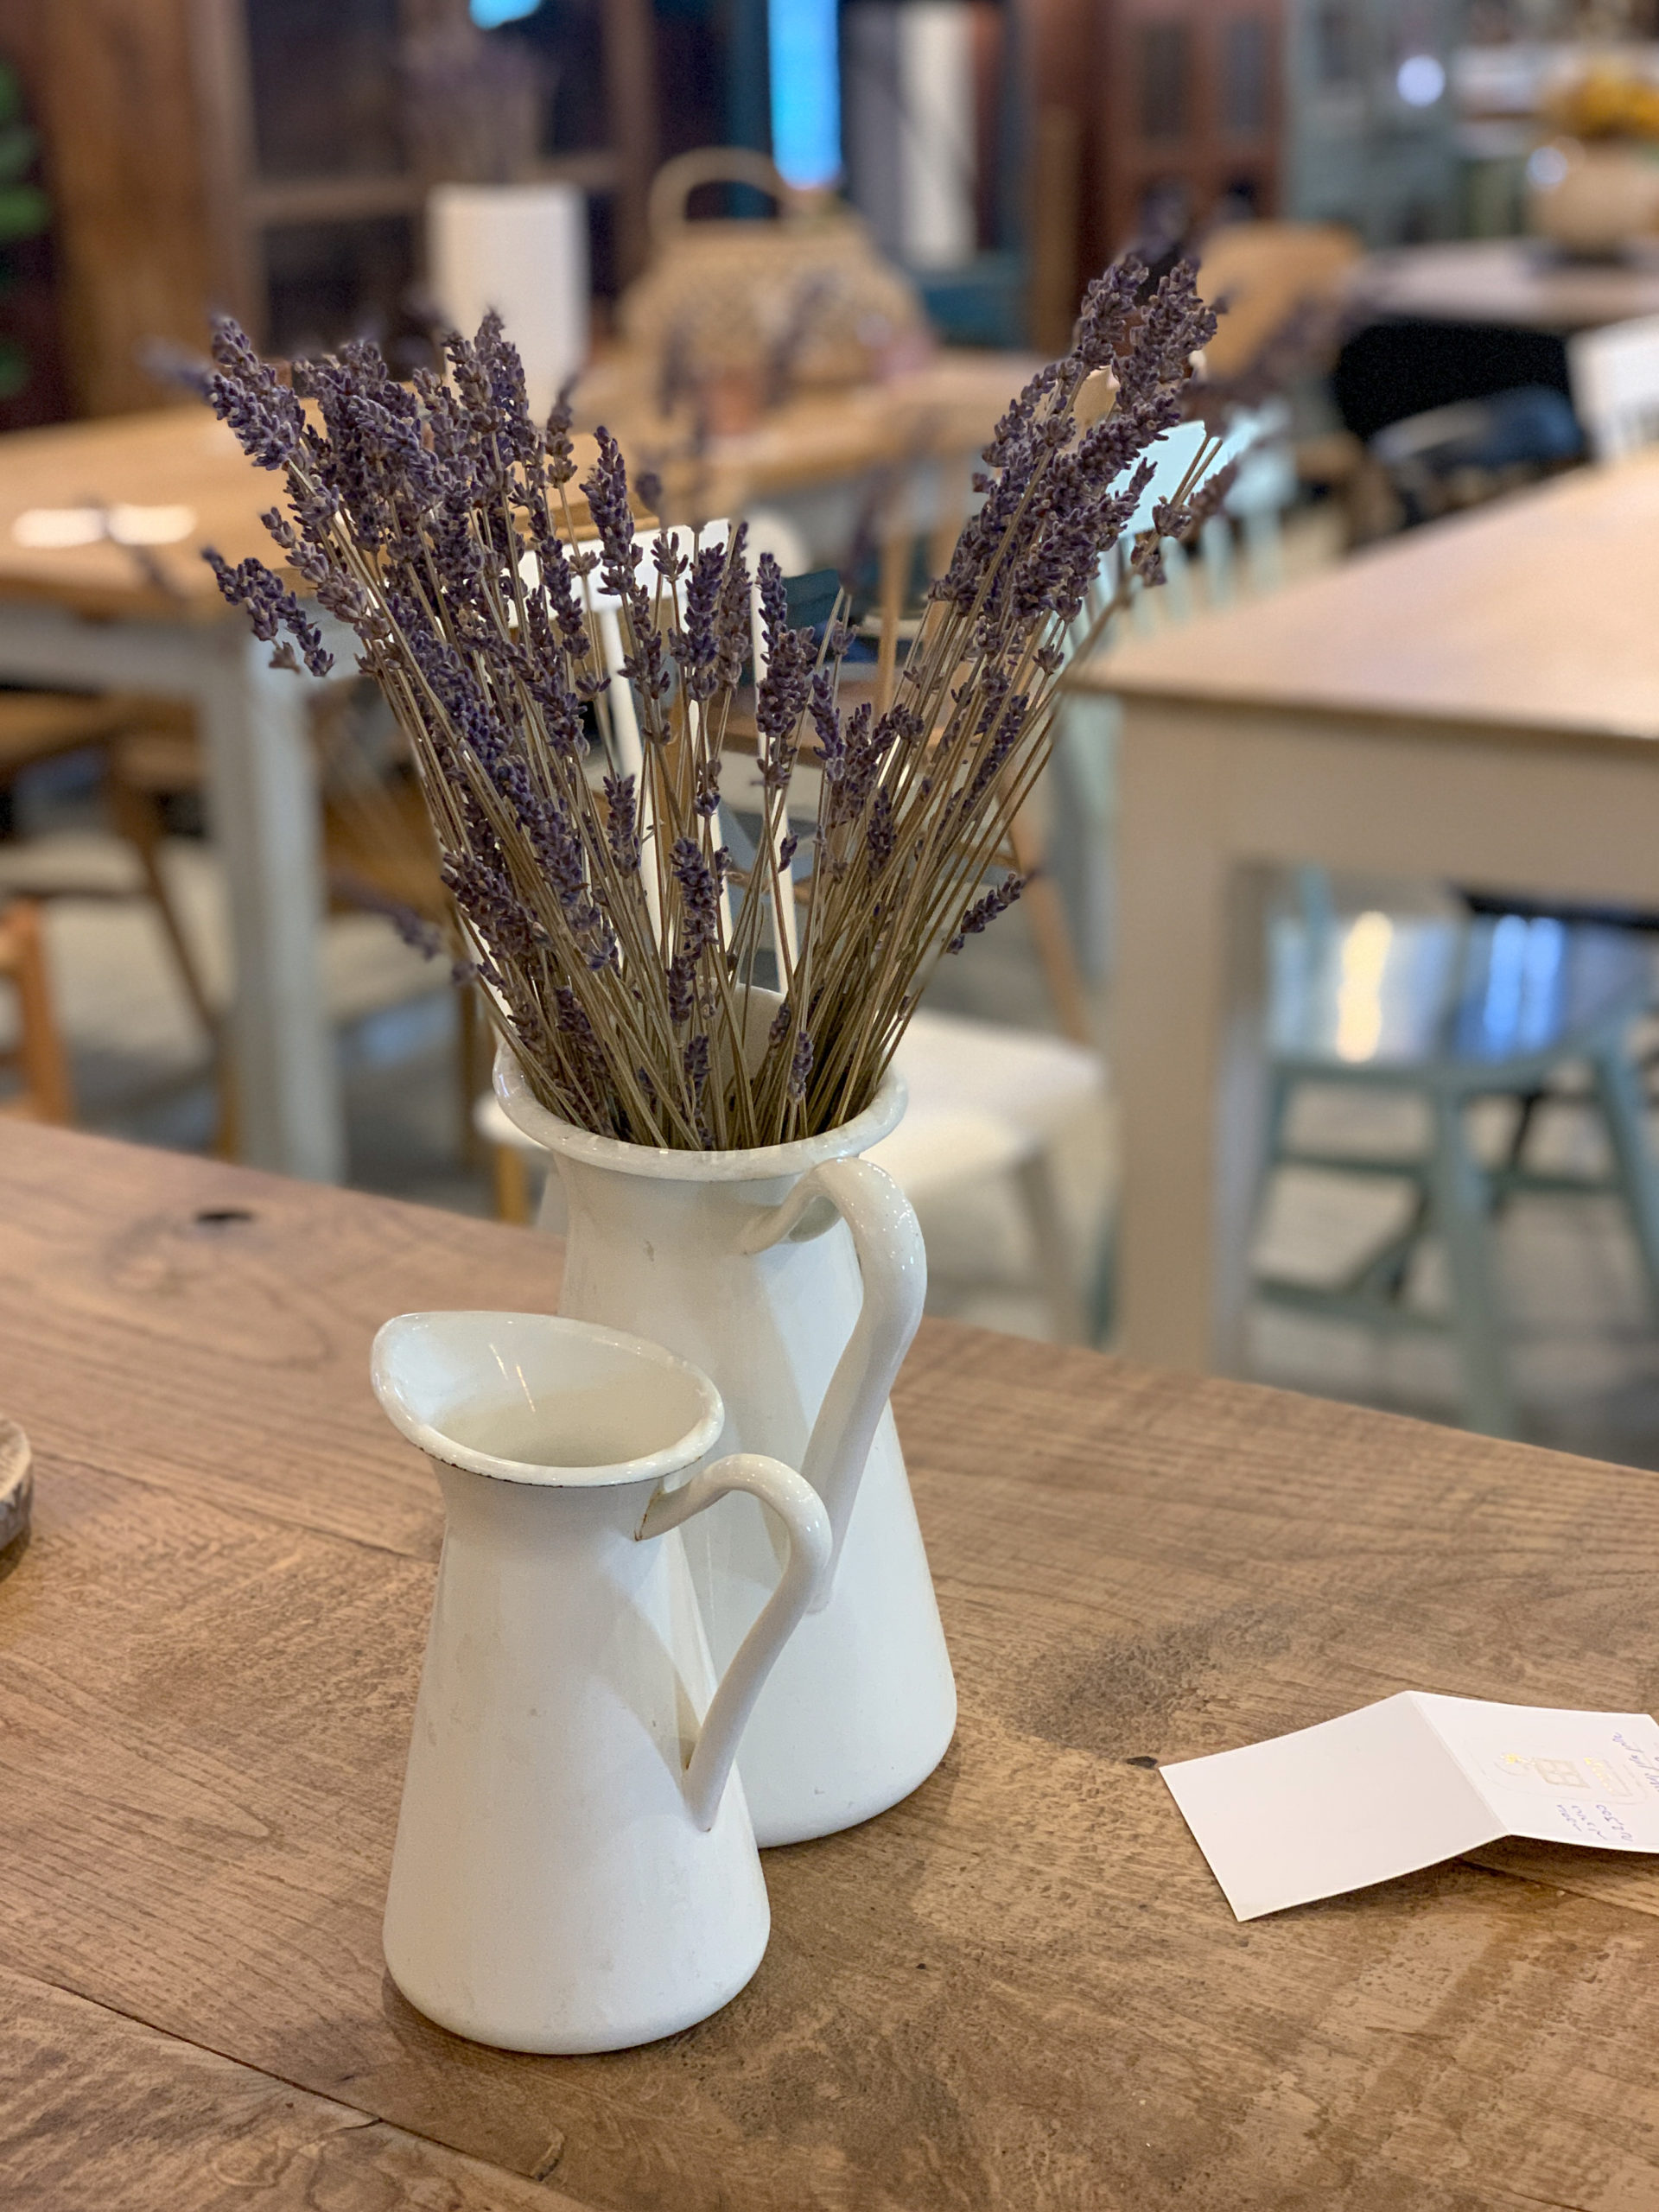 אגרטל עם פרחי לבנדר סגולים על שולחן עץ יפה בחנות הרהיטים תומיק באבן יהודה